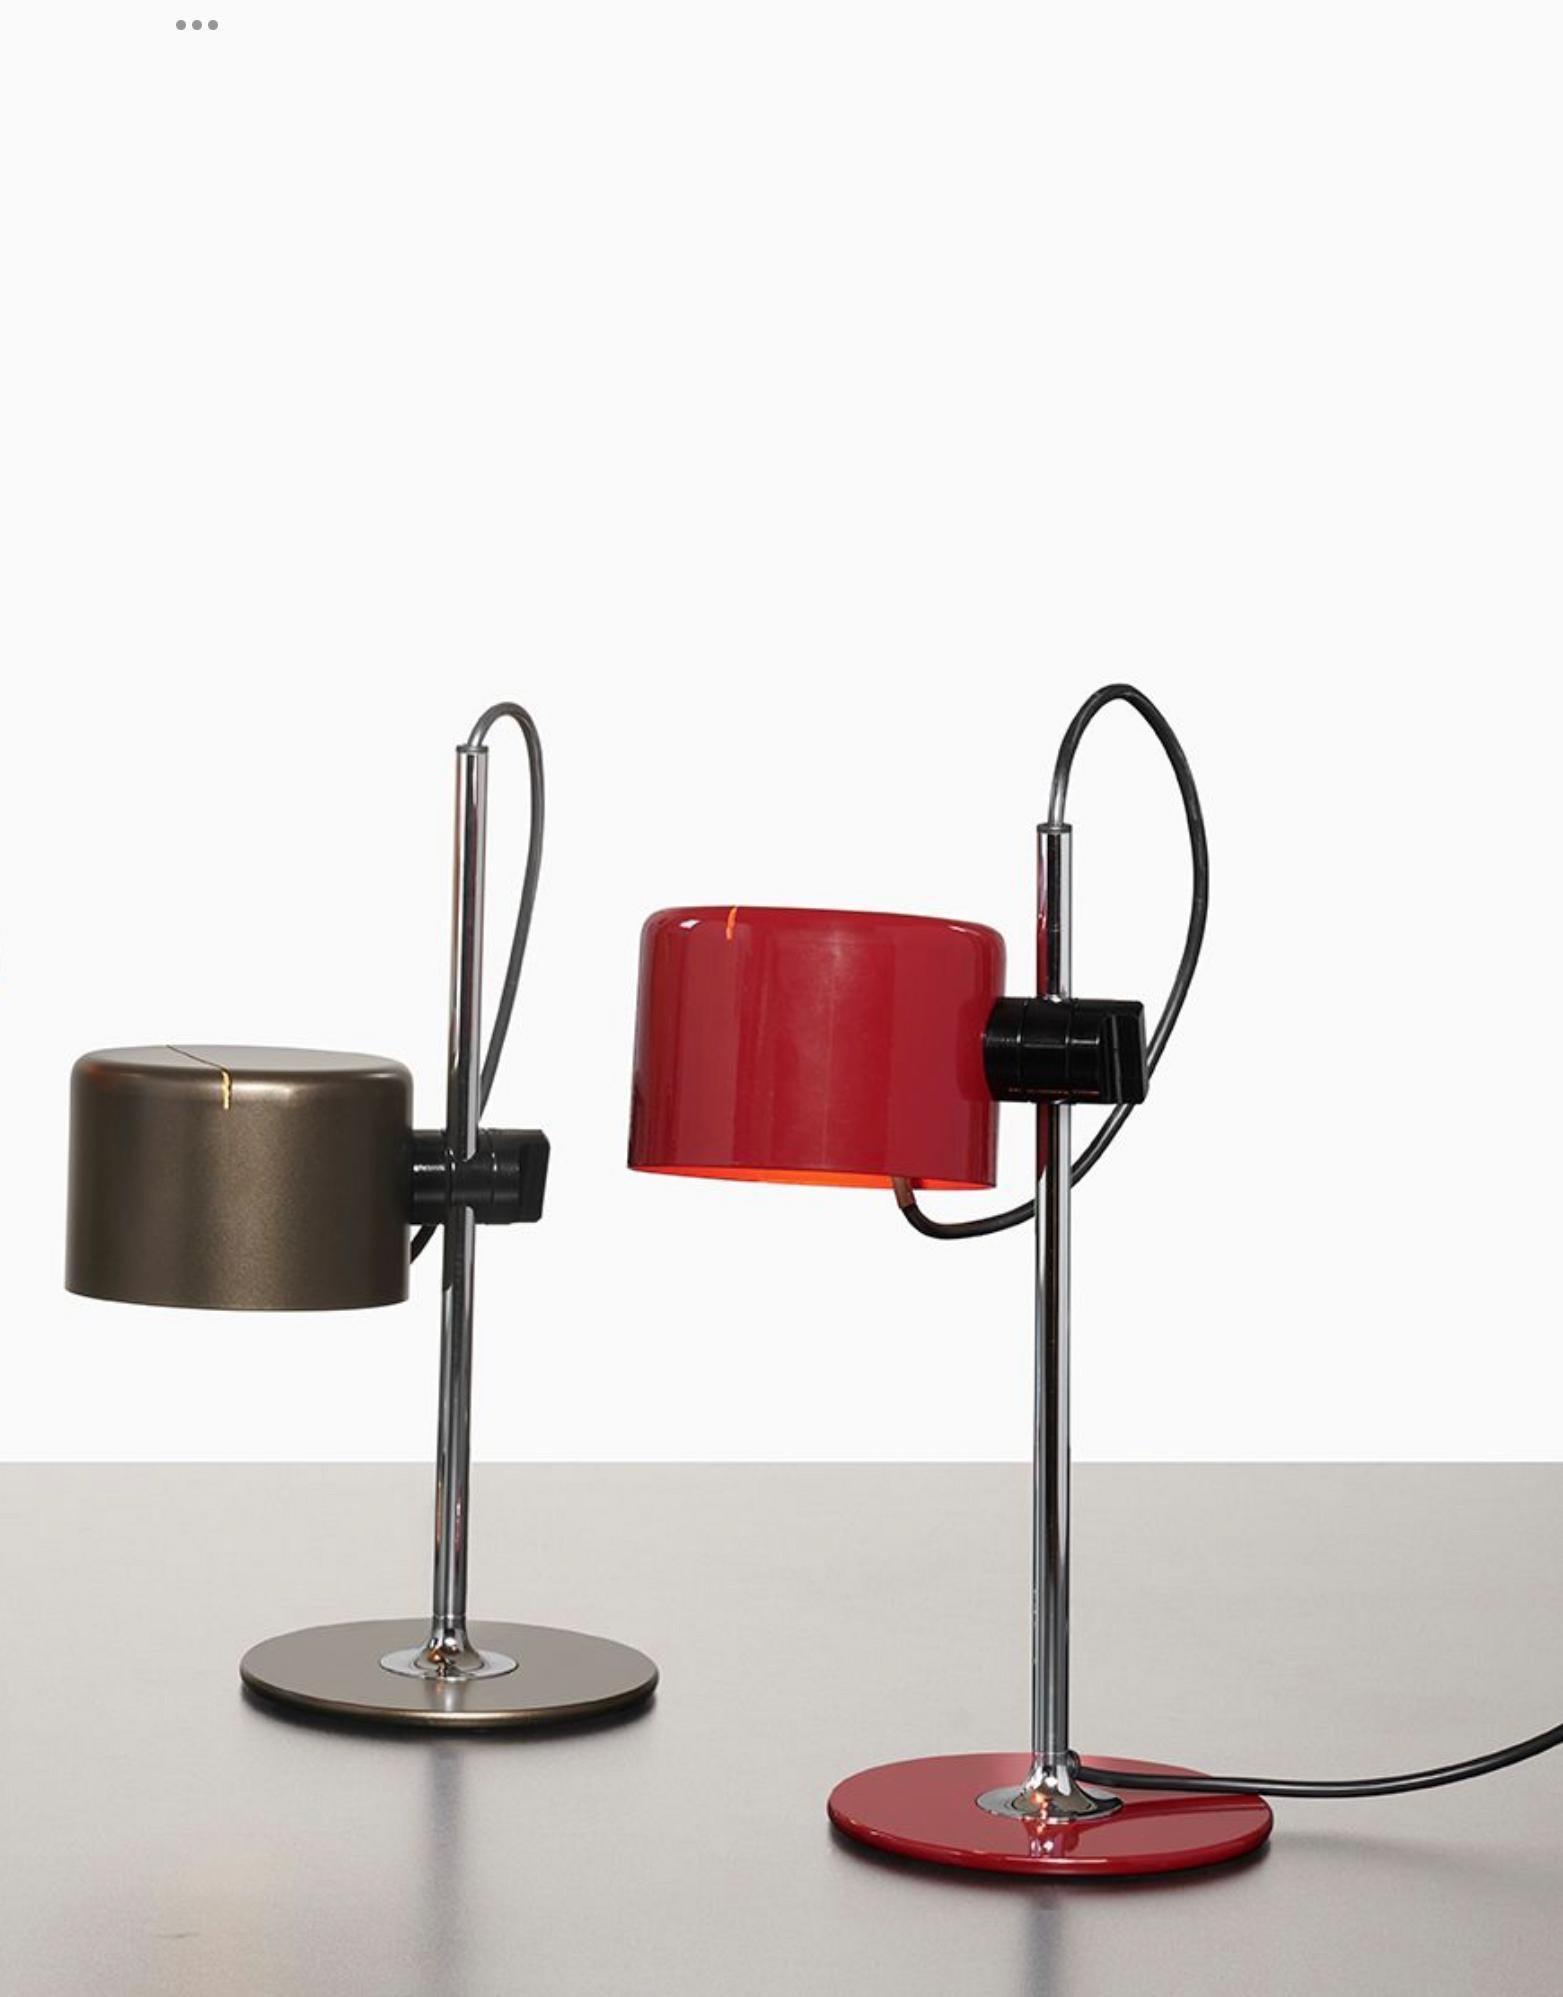 Lot de deux lampes de table modèle Mini Coupe conçu par Joe Colombo.
Lampe de table à lumière directe, base en métal laqué, tige chromée, réflecteur réglable en aluminium laqué.
Fabriqué par Oluce, Italie.

Coupé est née en 1967 de l'intuition